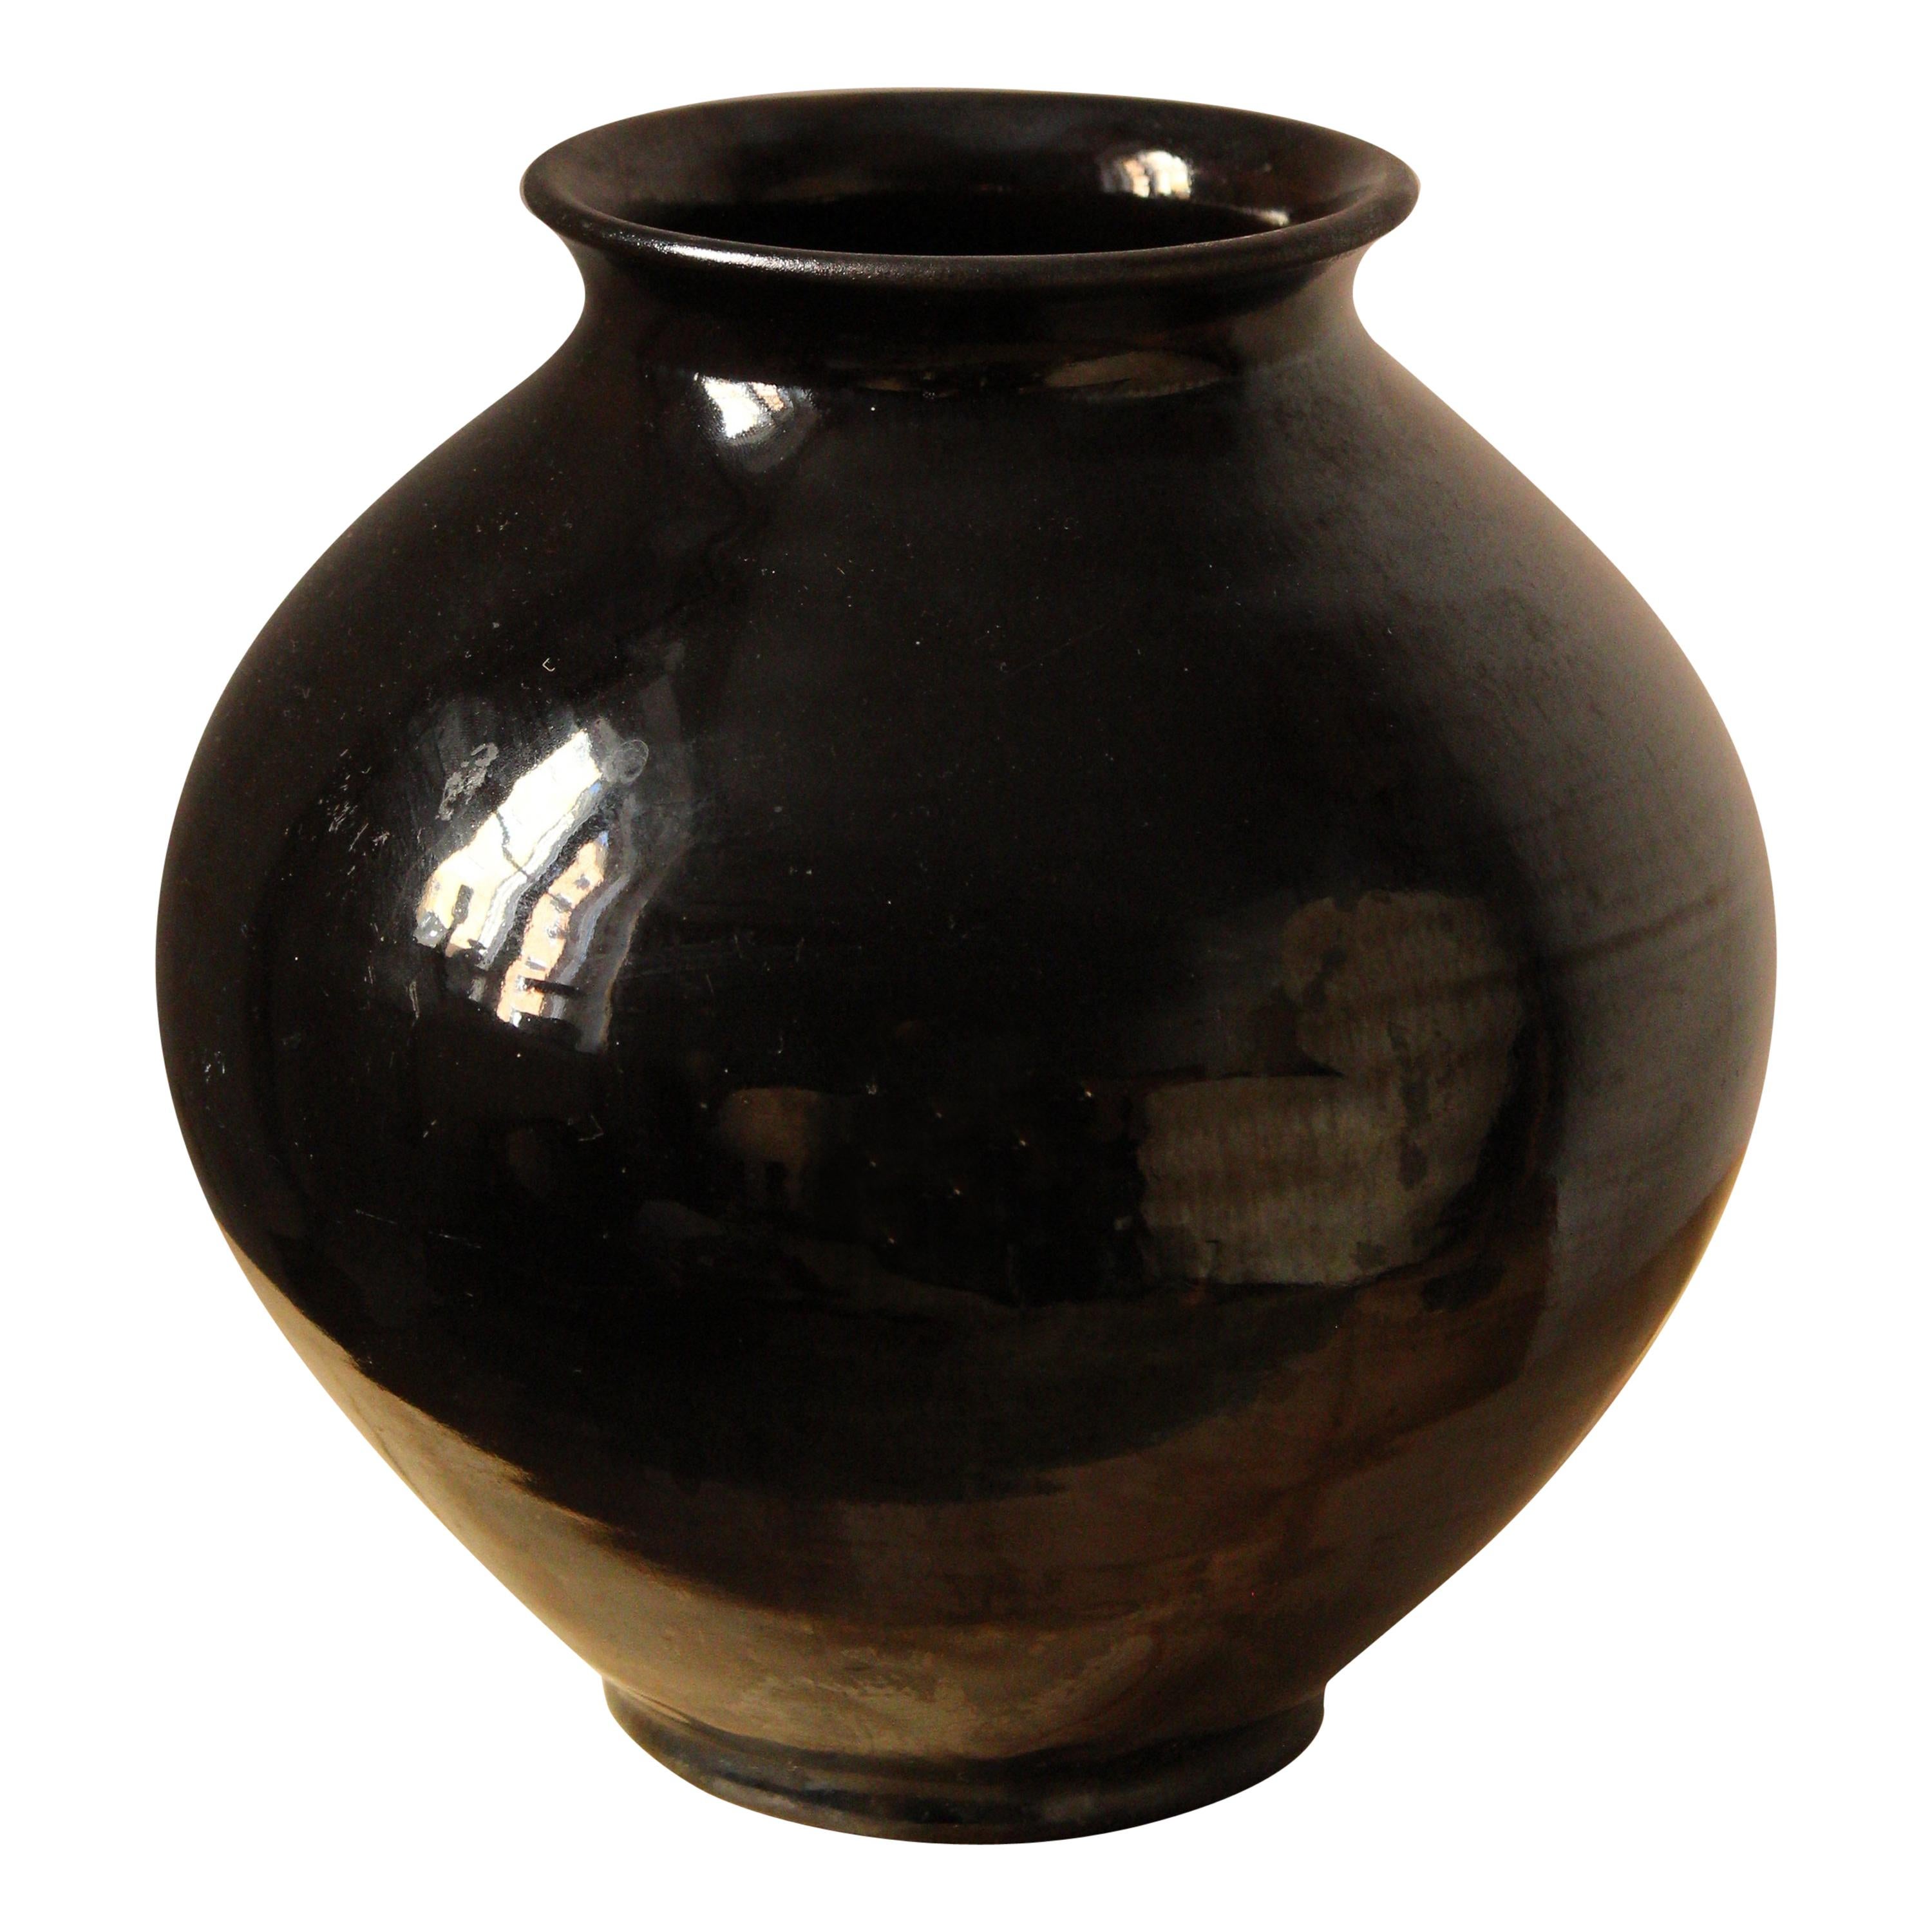 Herman Kähler, Sizable Vase, Black Glazed Stoneware, Denmark, C. 1900